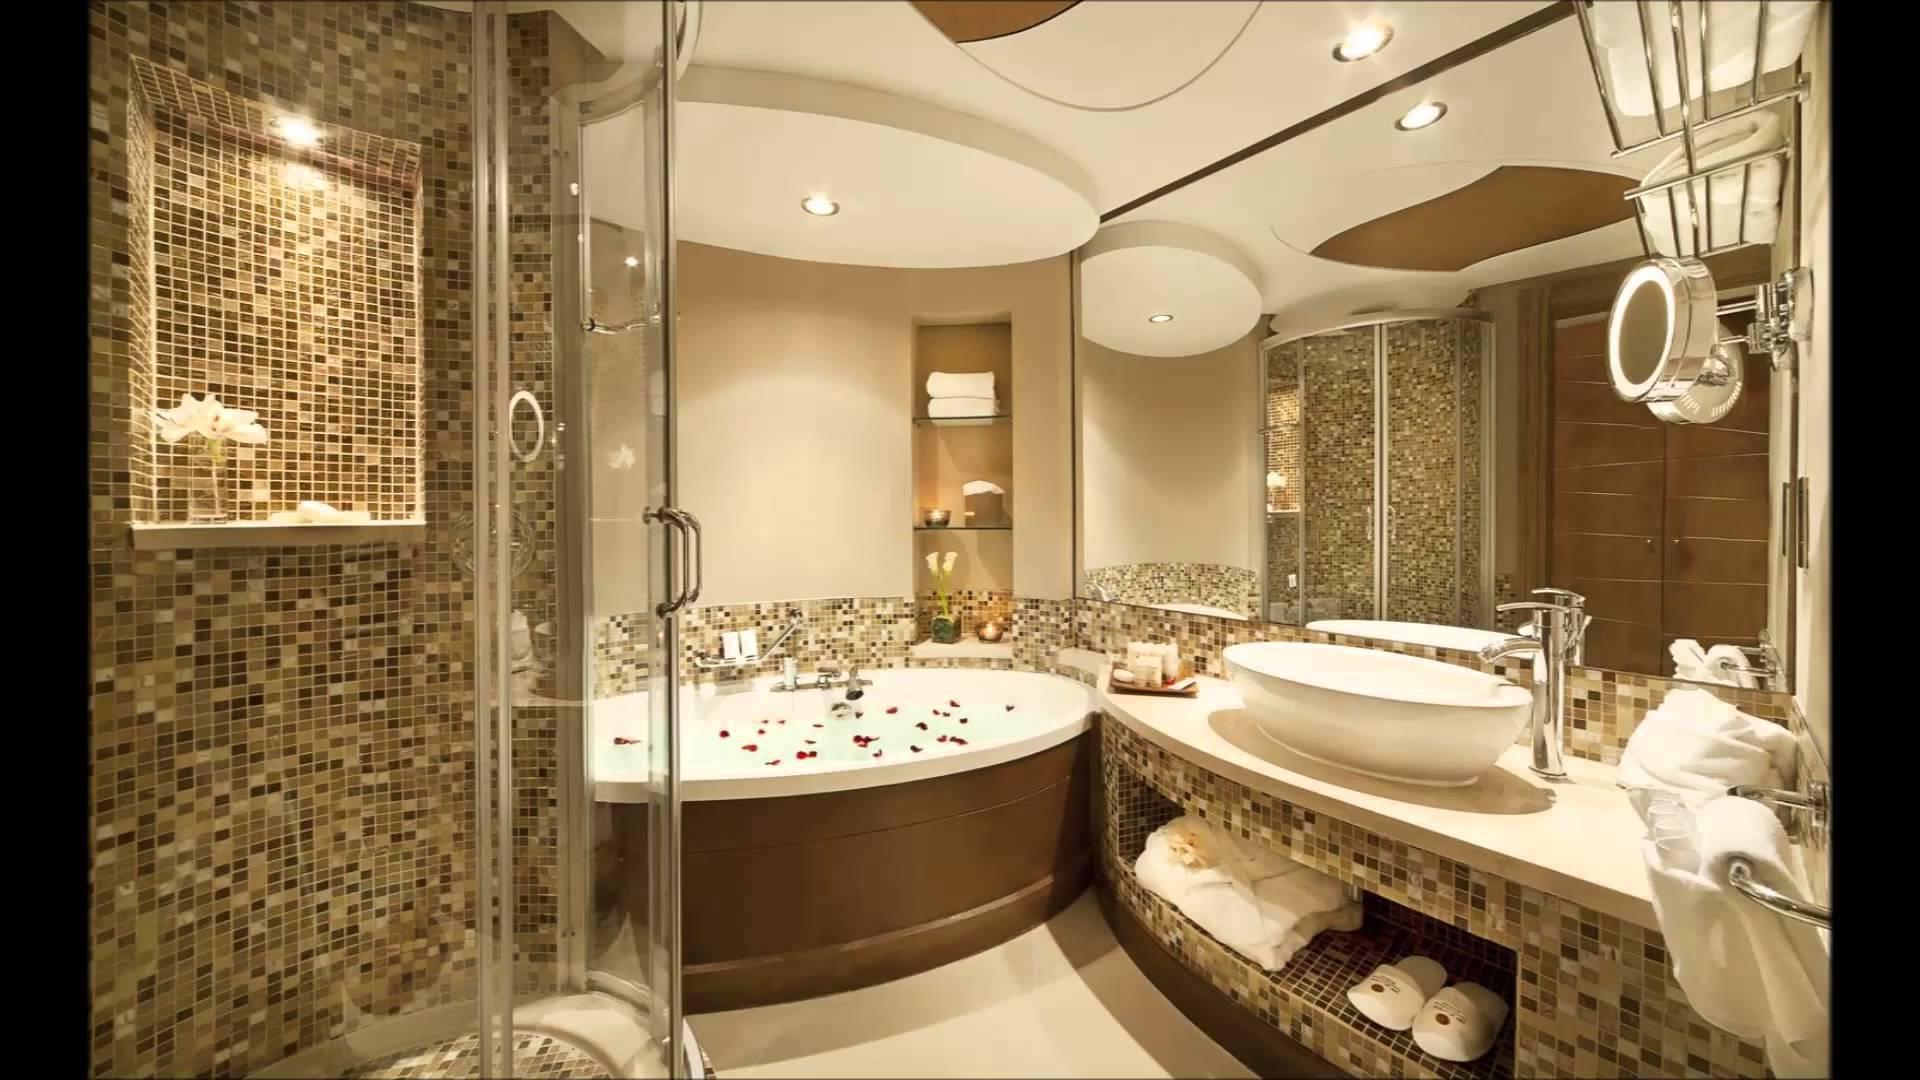 Какой вид плитки будет лучше смотреться в ванной?